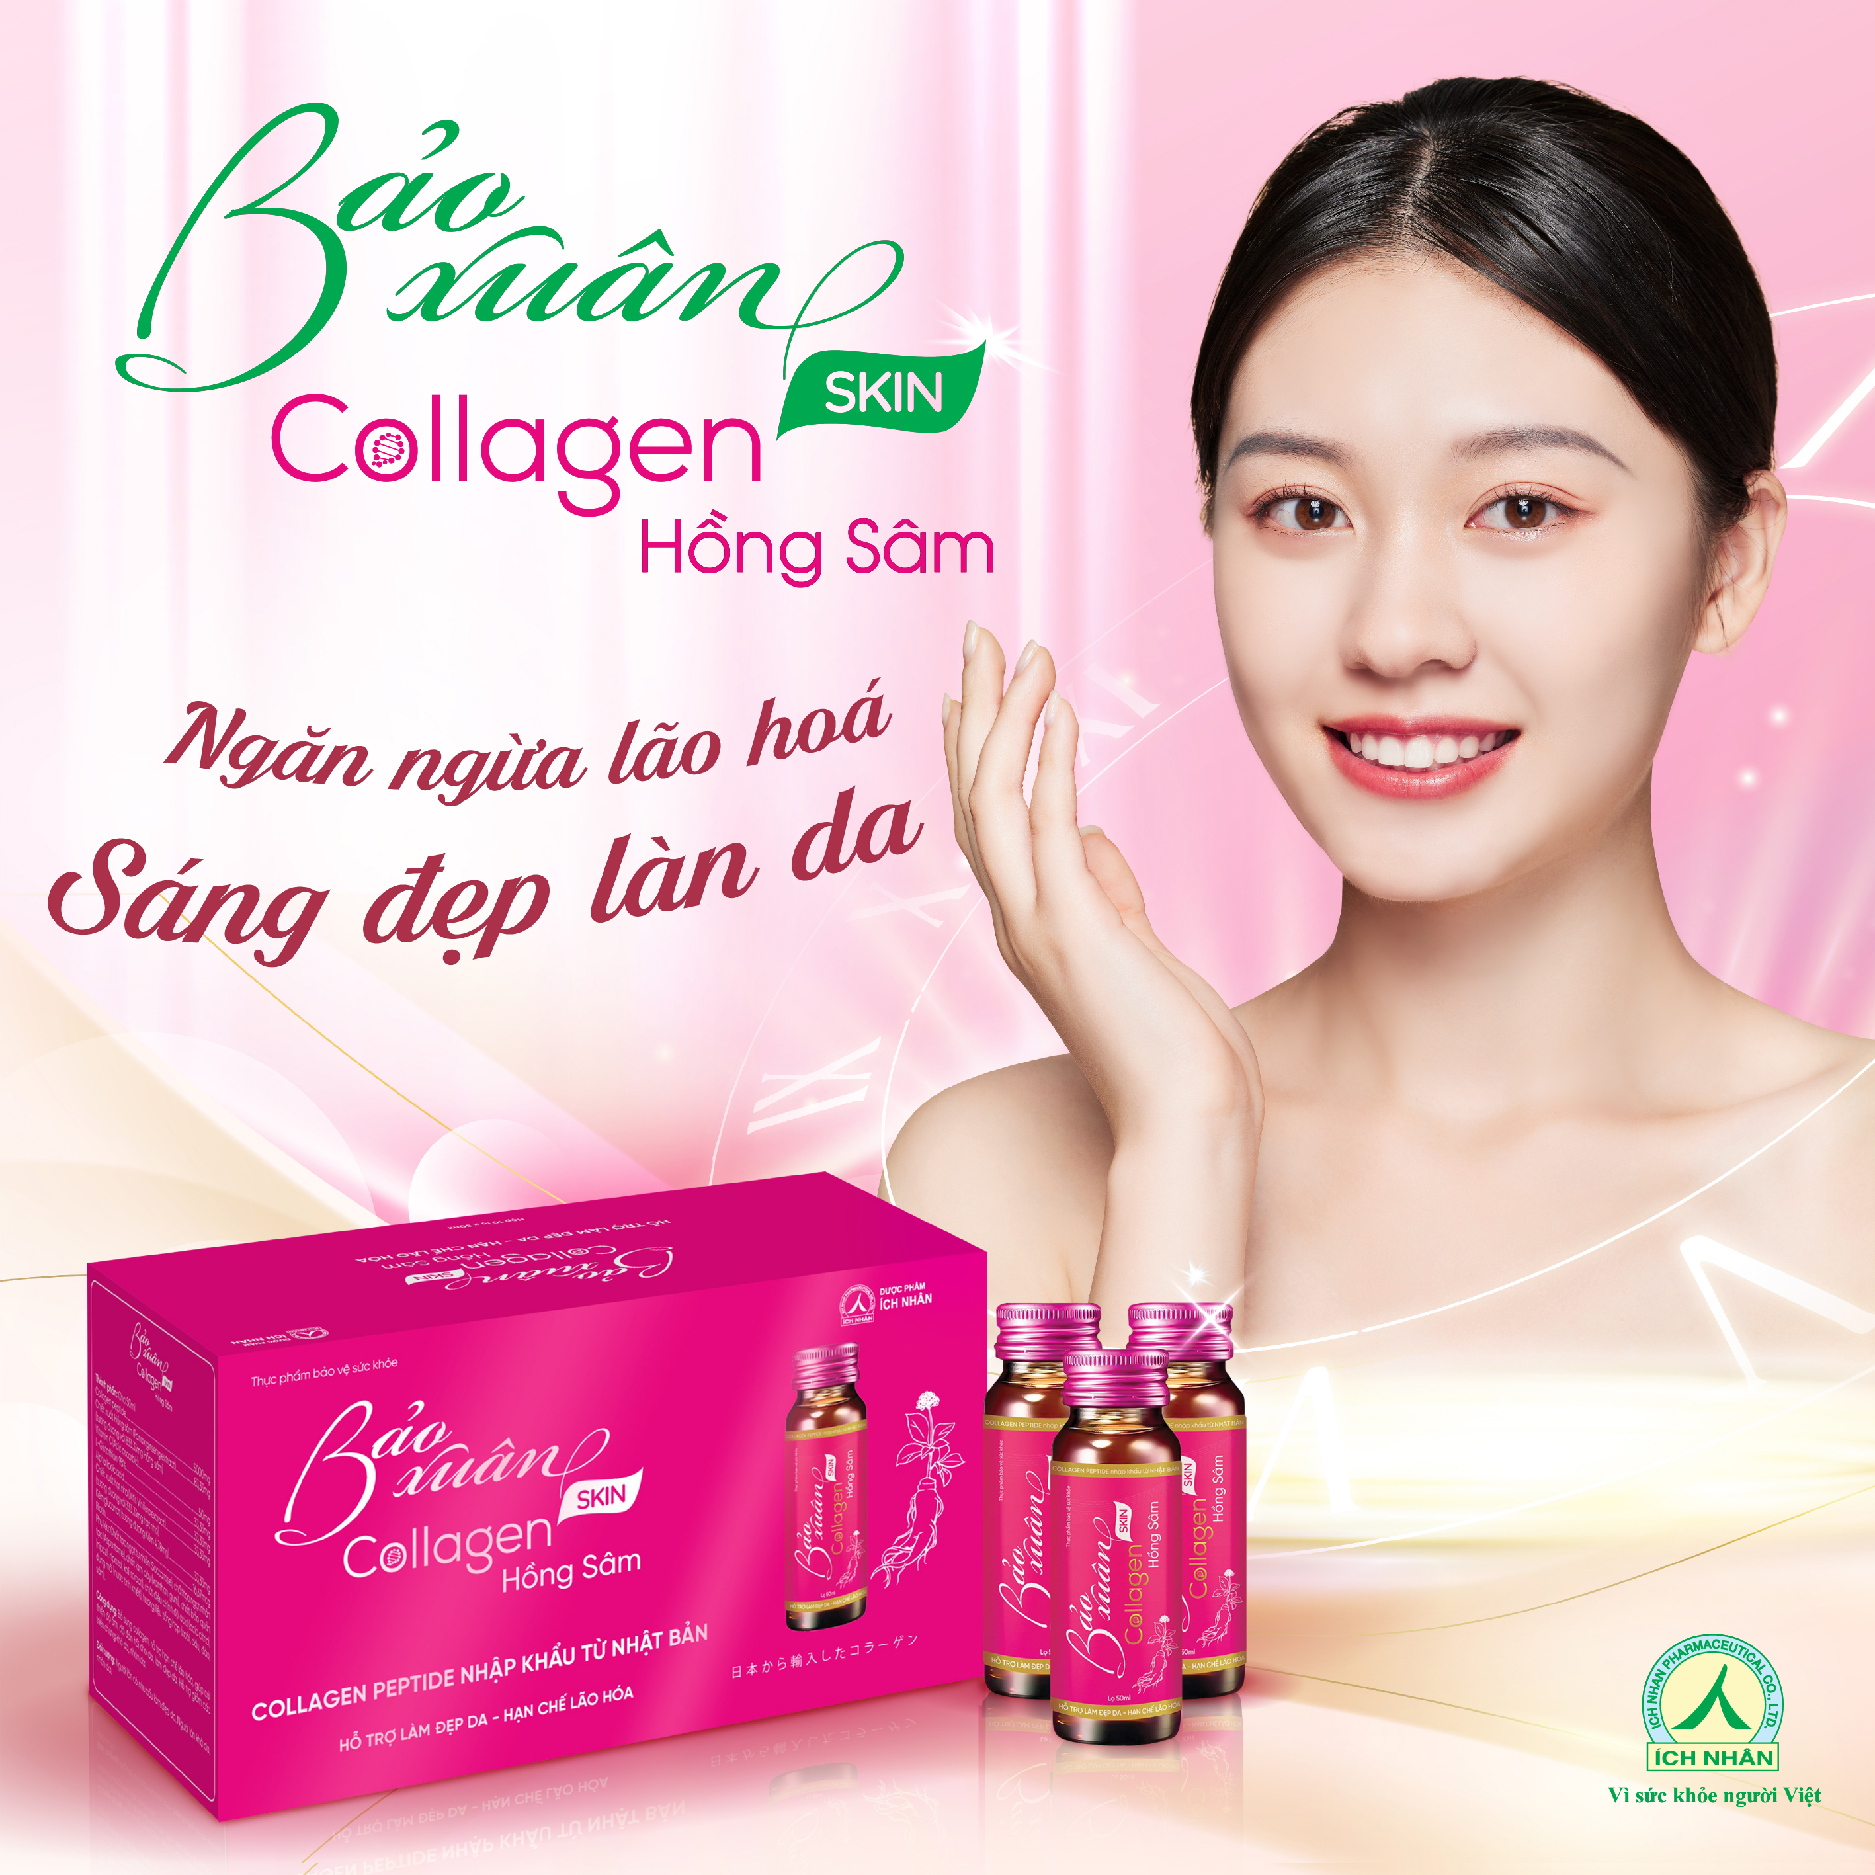 Nước Uống Bổ Sung Bảo Xuân Skin Collagen Hồng Sâm giúp hạn chế lão hóa